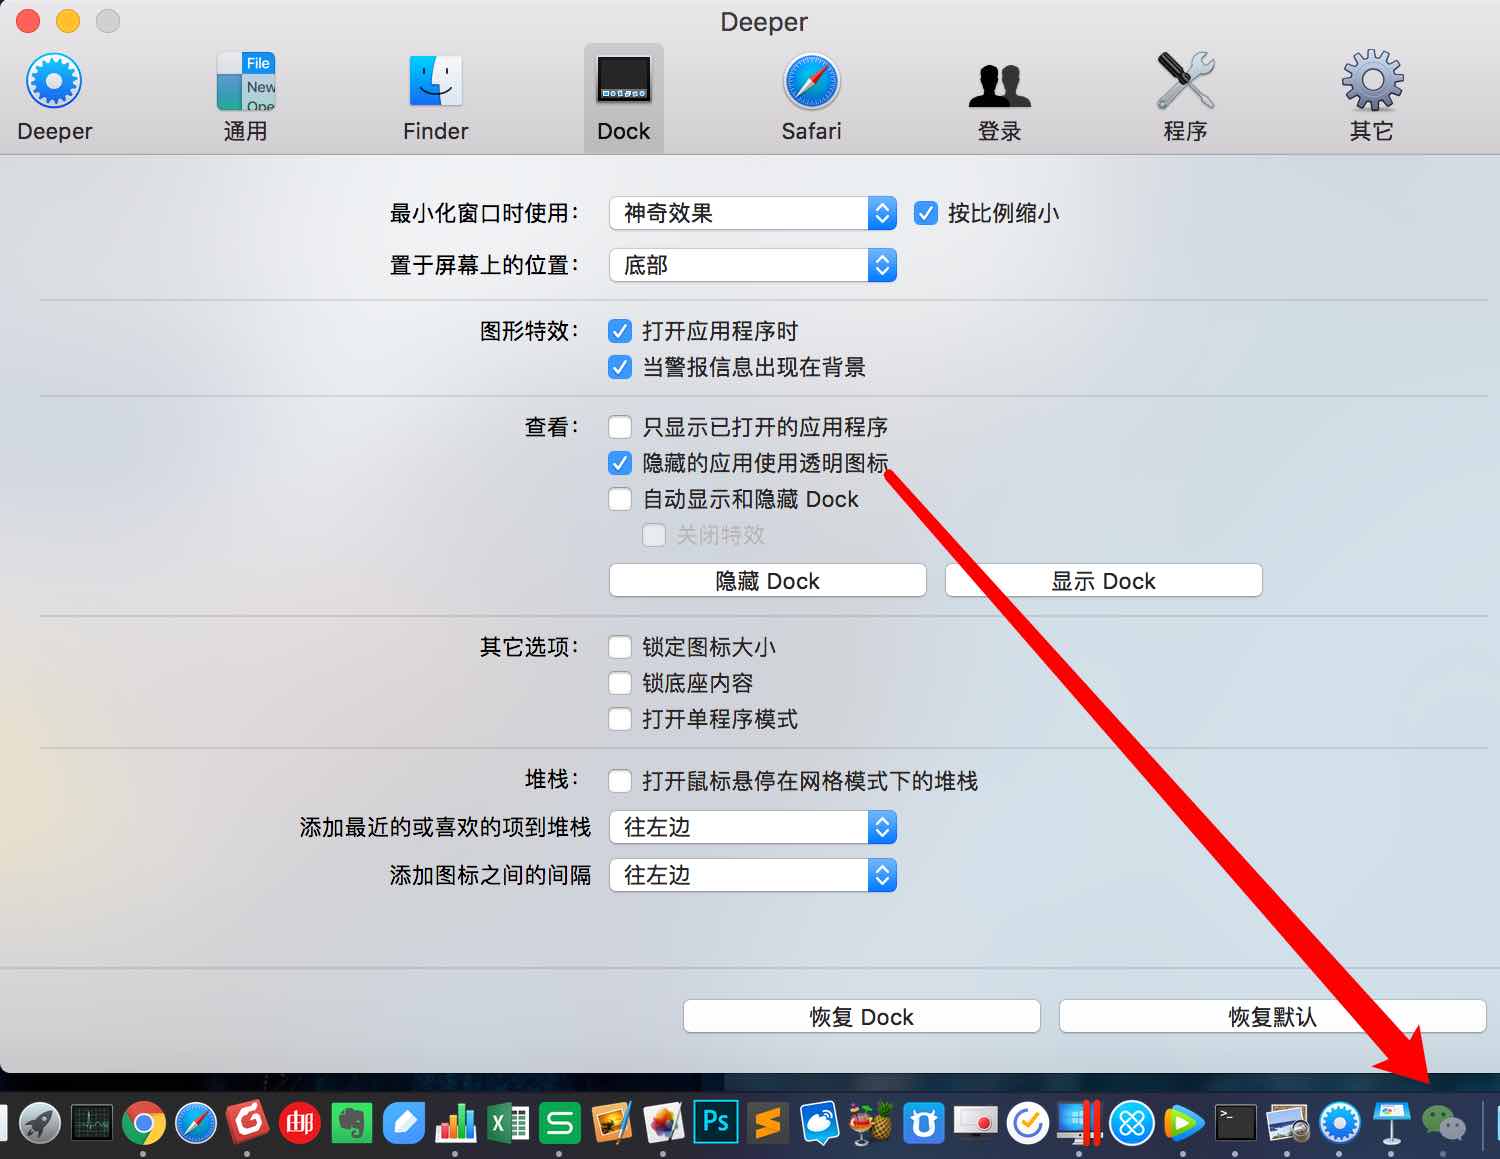 「Deeper」解锁 Mac的隐藏功能，比如显示隐藏文件